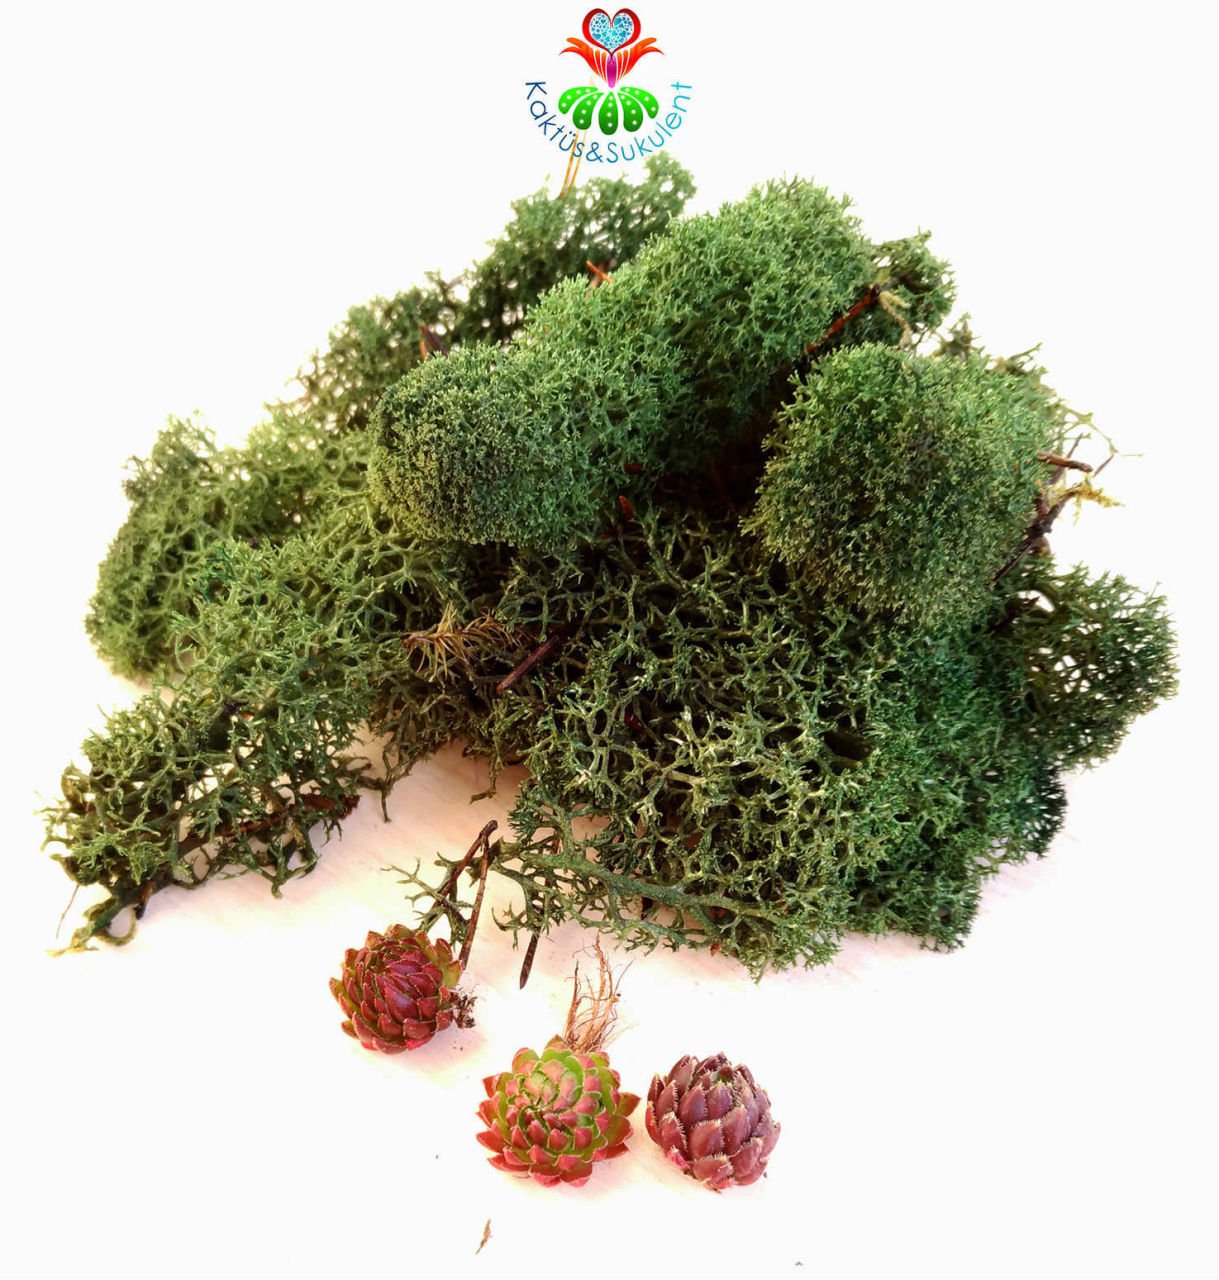 Koyu Yeşil Renk Canlı Terraryum Yosunu- Reindeer Moss- Rengeyiği Yosunu-Likeni,Mini Bahçe,Yosun